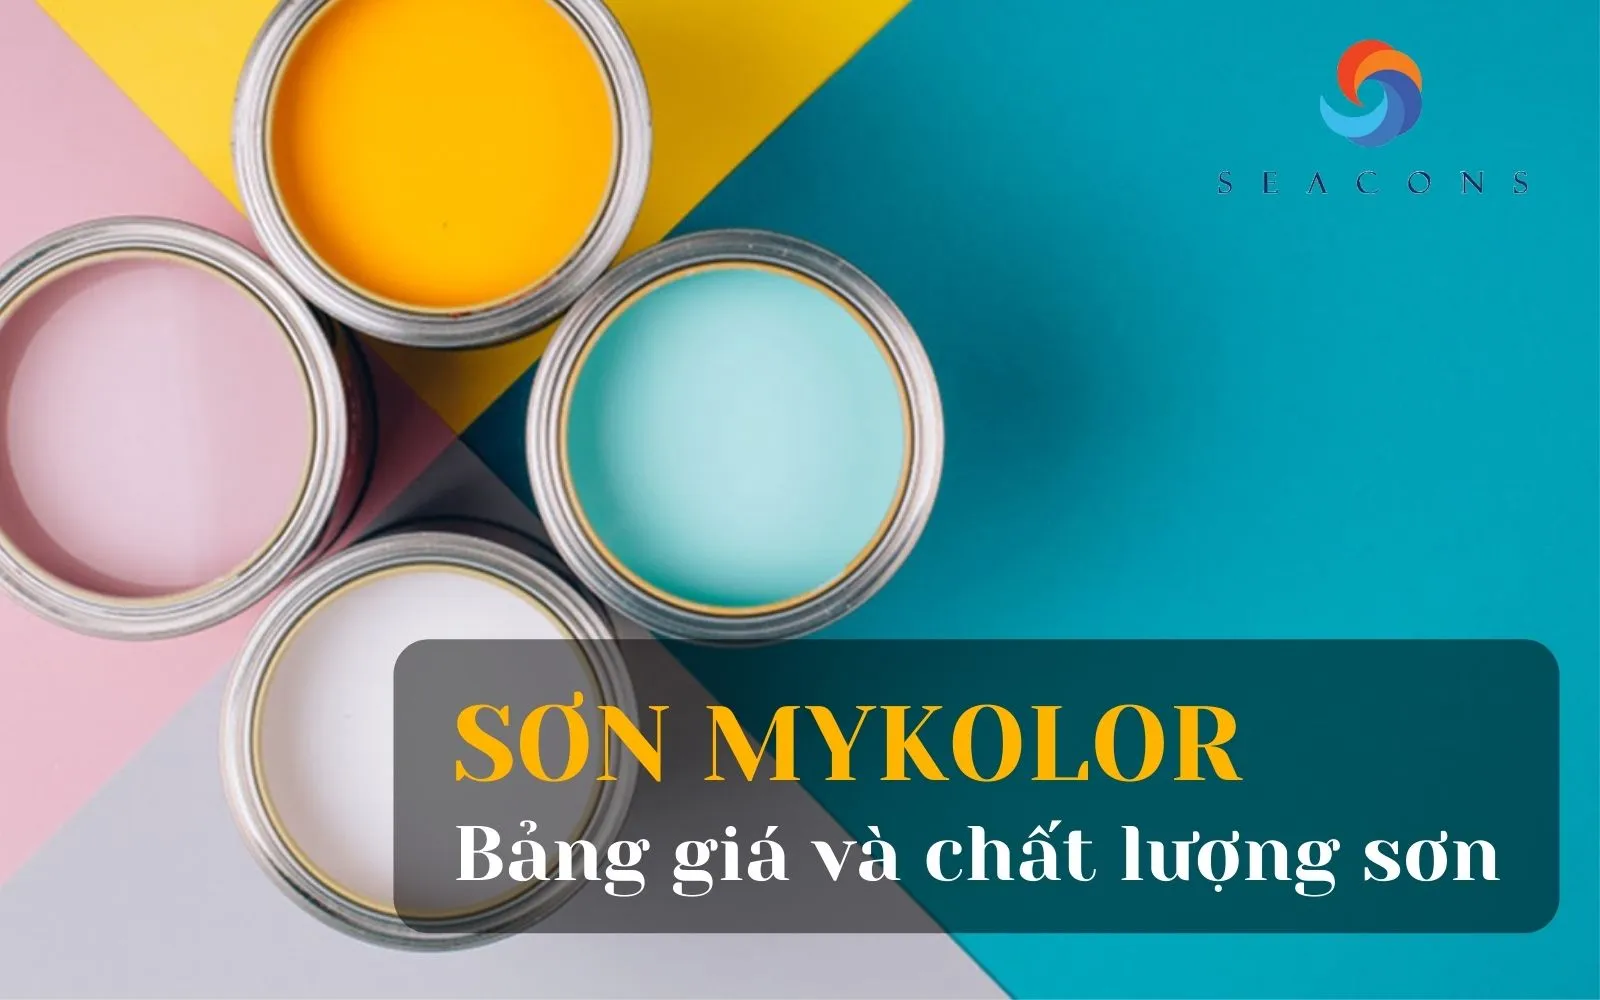 Bạn đang cần tìm hiểu về bảng giá sơn chất lượng cao? Hãy ghé thăm Sơn Mykolor để được tư vấn và đưa ra giải pháp tốt nhất cho ngôi nhà của bạn.